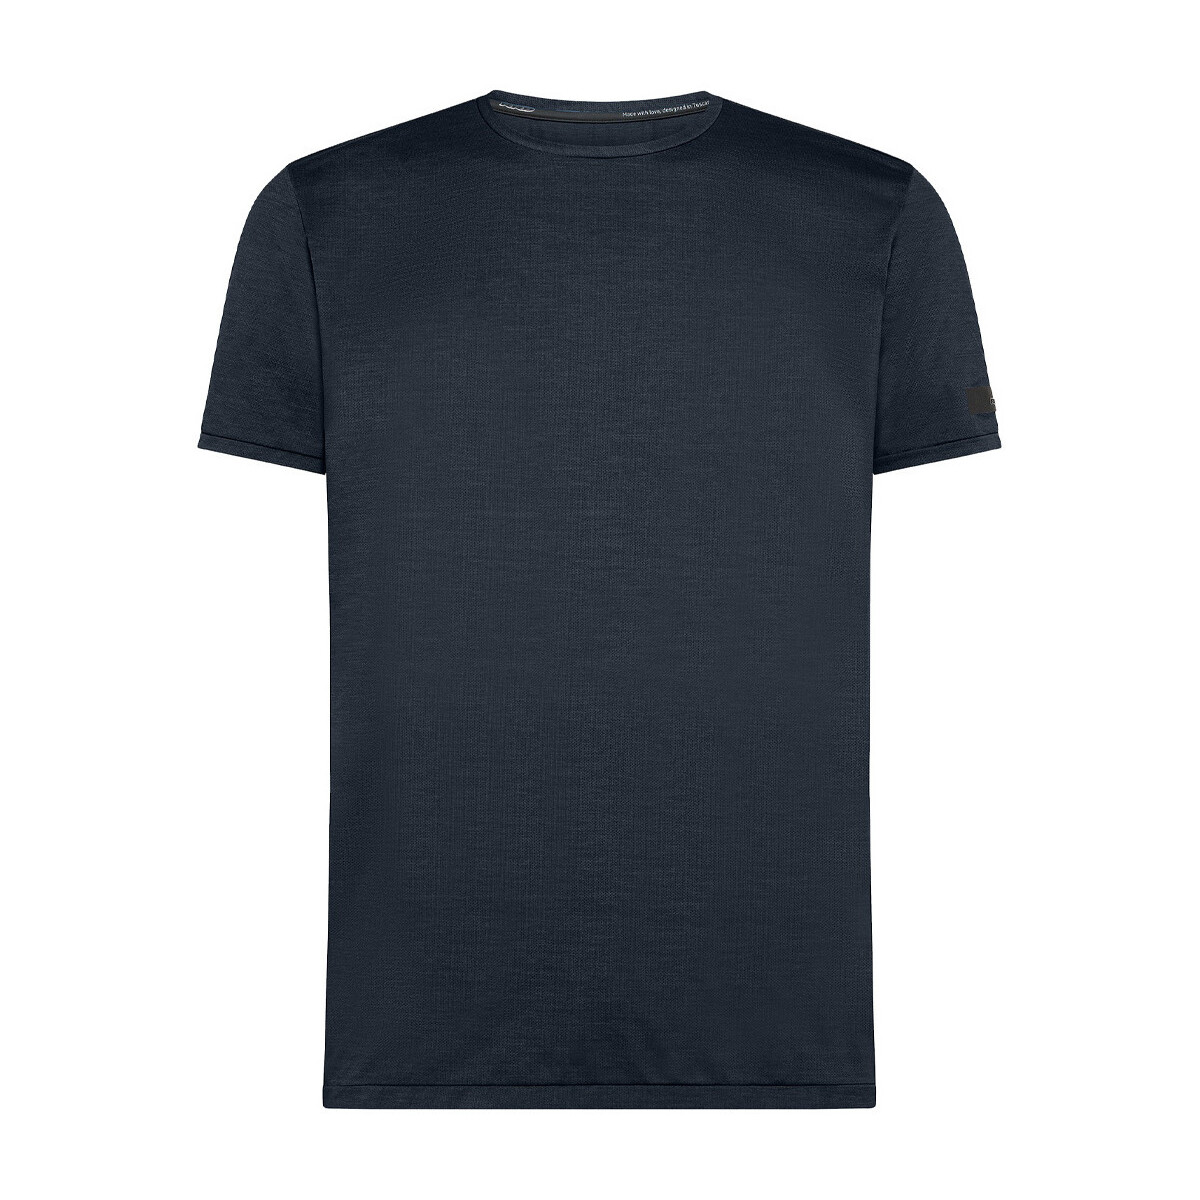 Vêtements Homme T-shirts manches courtes Rrd - Roberto Ricci Designs 24215-60 Bleu